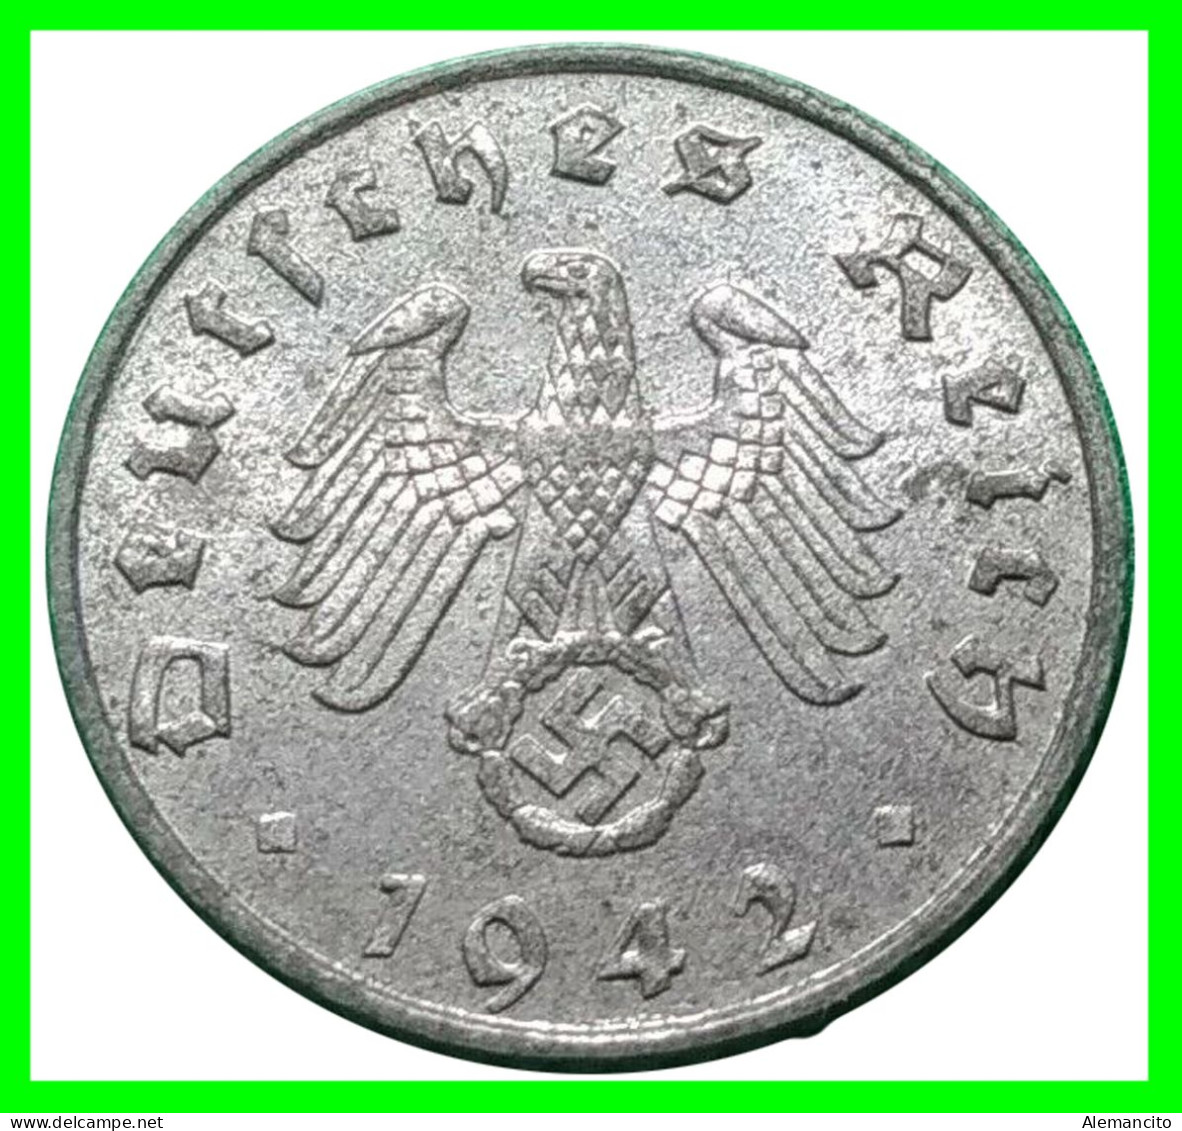 ALEMANIA - GERMANY SERIE DE 6 MONEDAS DE 5 REICHSPFNNIG TERCER REICHS ( AÑO 1942 CECAS ( - A - B -D - E - F - G ) - 5 Reichspfennig